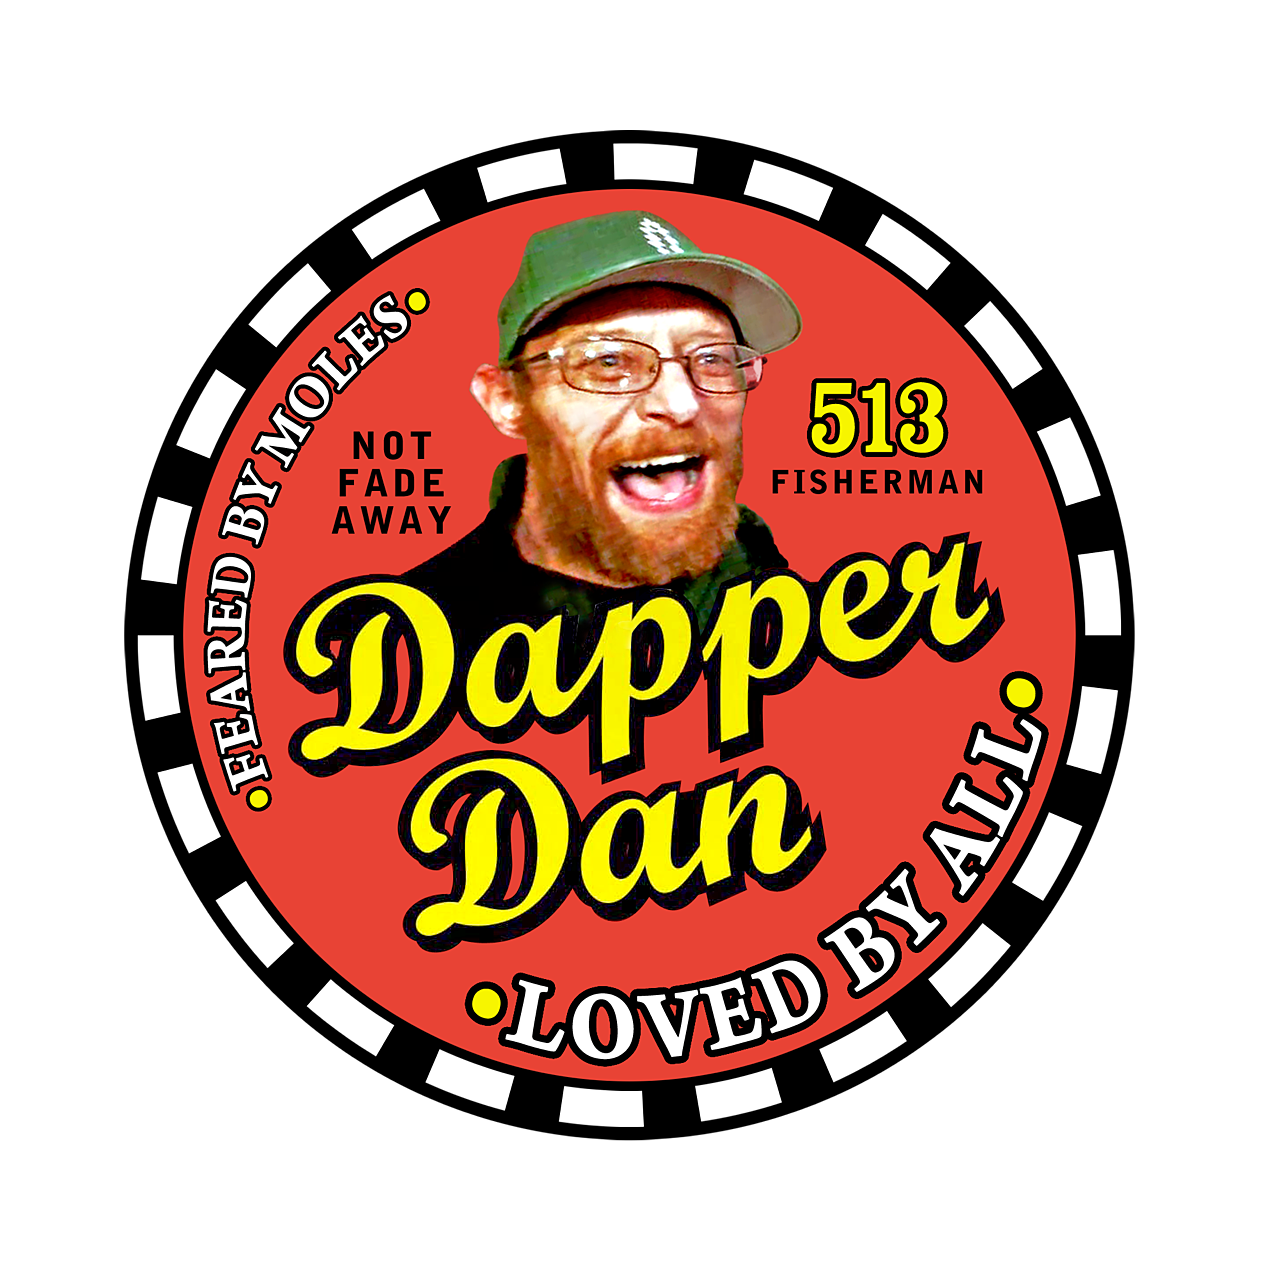 Dapper' Dan Snell ID'd as drowned fisherman